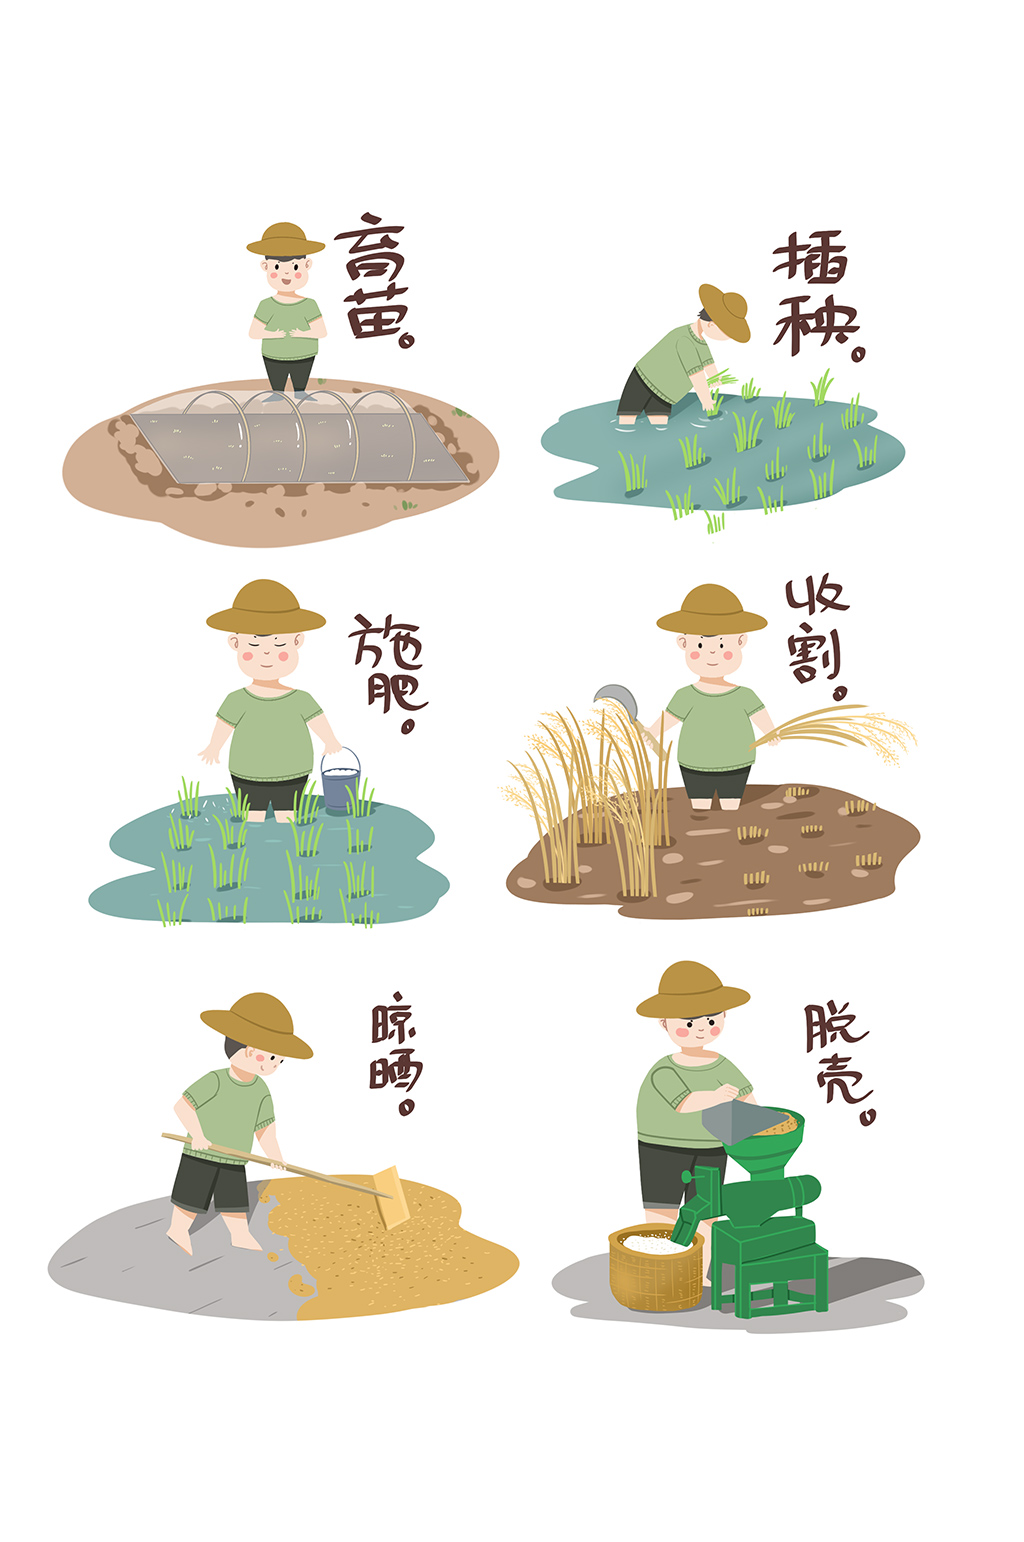 大米的生长过程步骤图图片